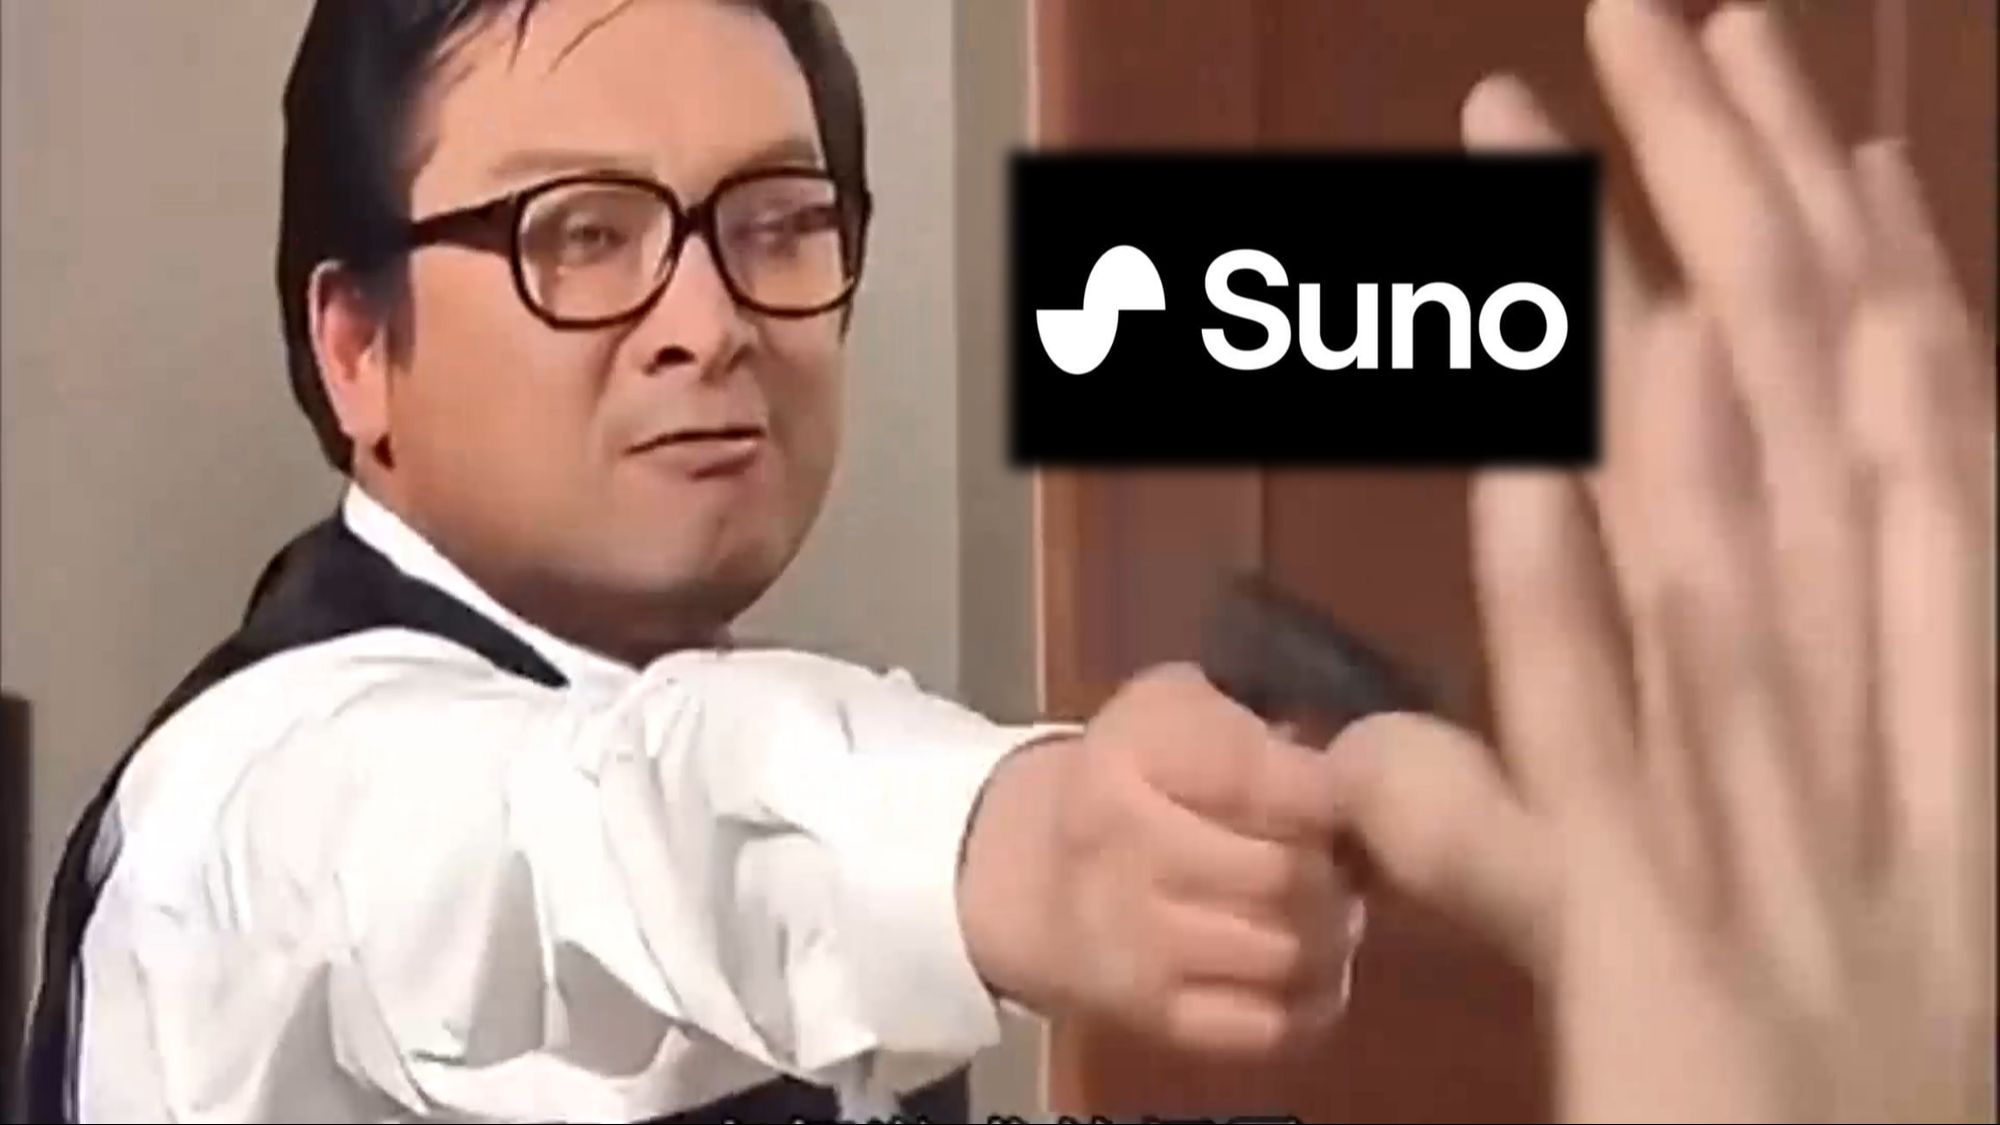 【Suno AI】把除虫射日歌原曲重新编曲成Kpop女团风